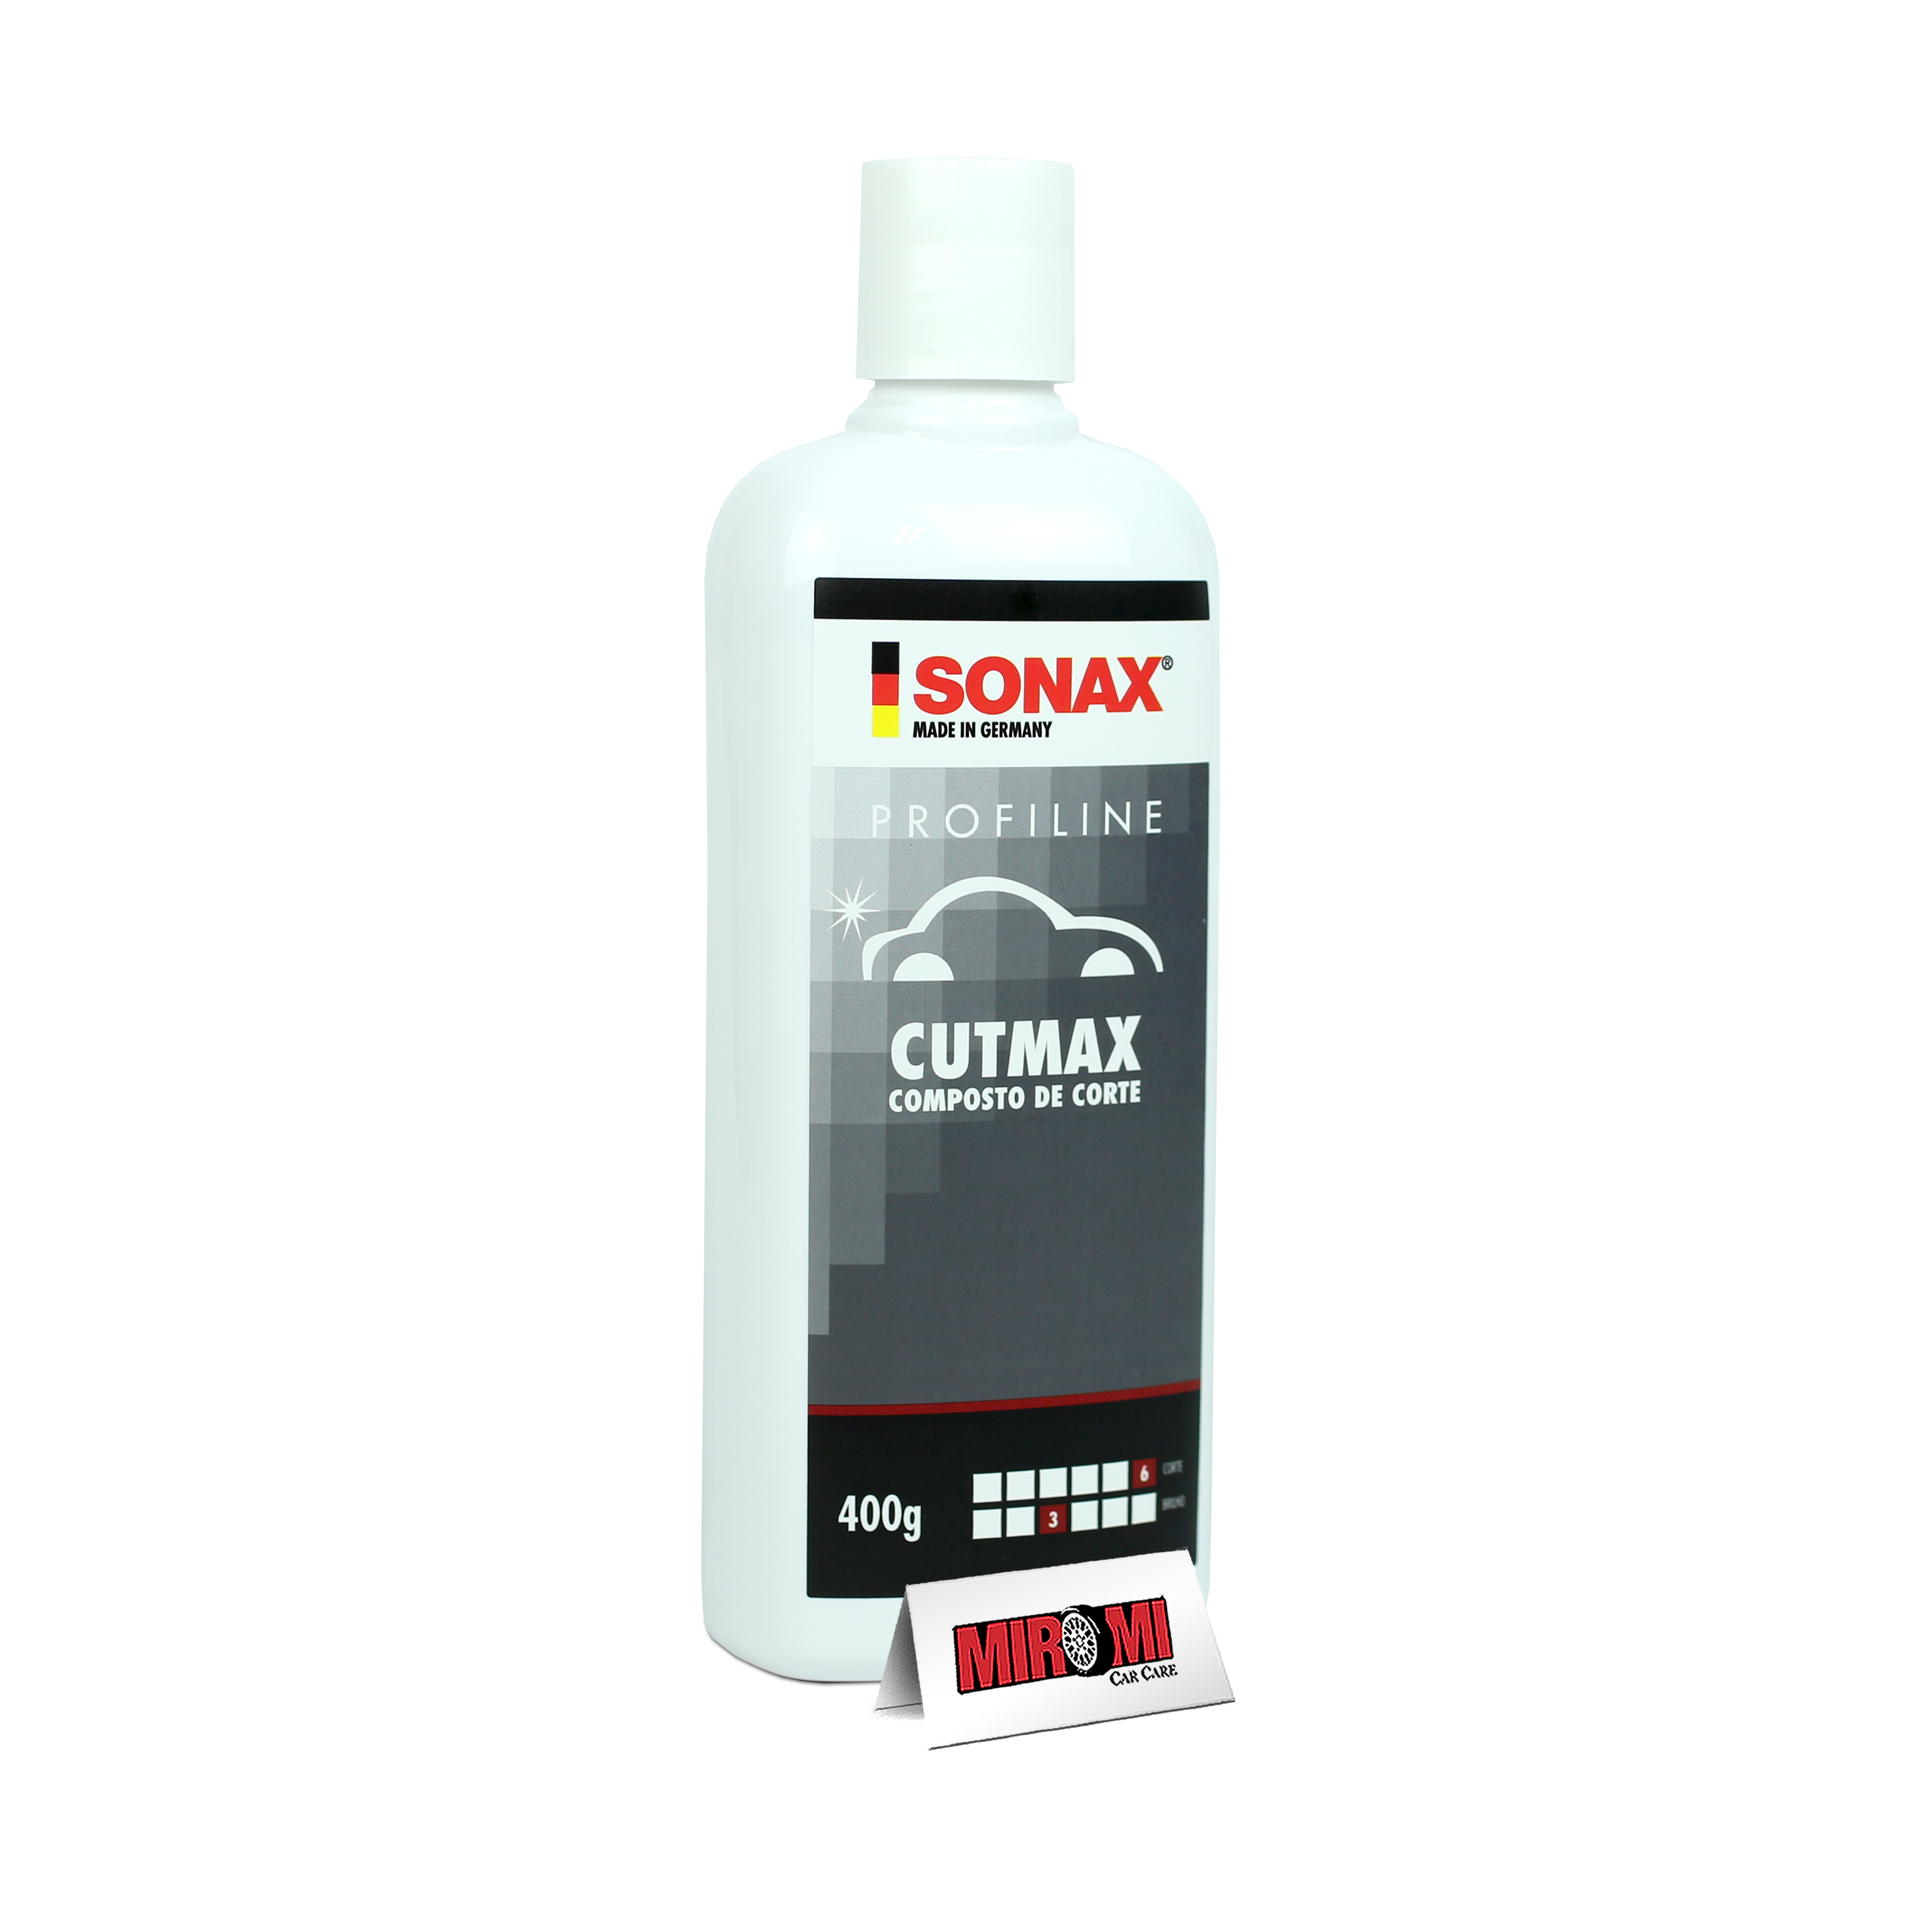 Sonax Verniz de Motor Premium em Spray Aerossol Engine Lacquer (300ml)